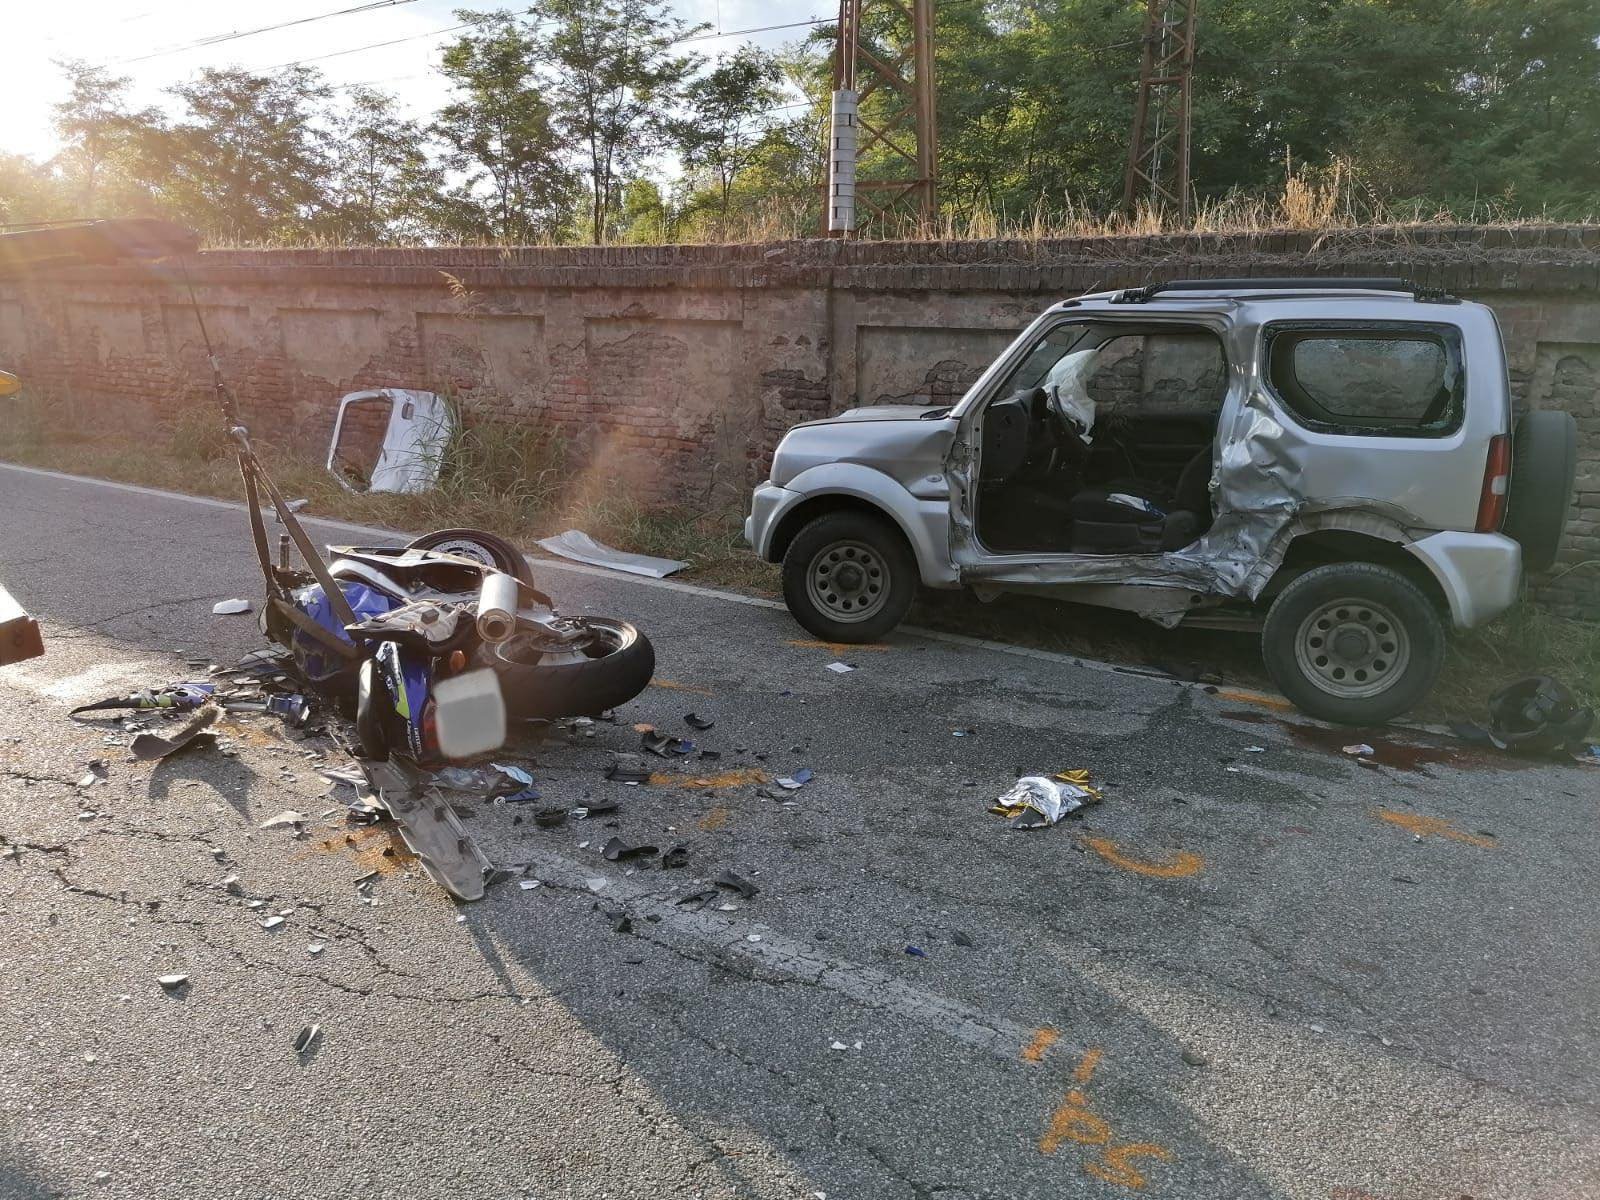 Tragico incidente sul ponte di ferro a Valenza tra una moto e un’auto: due morti